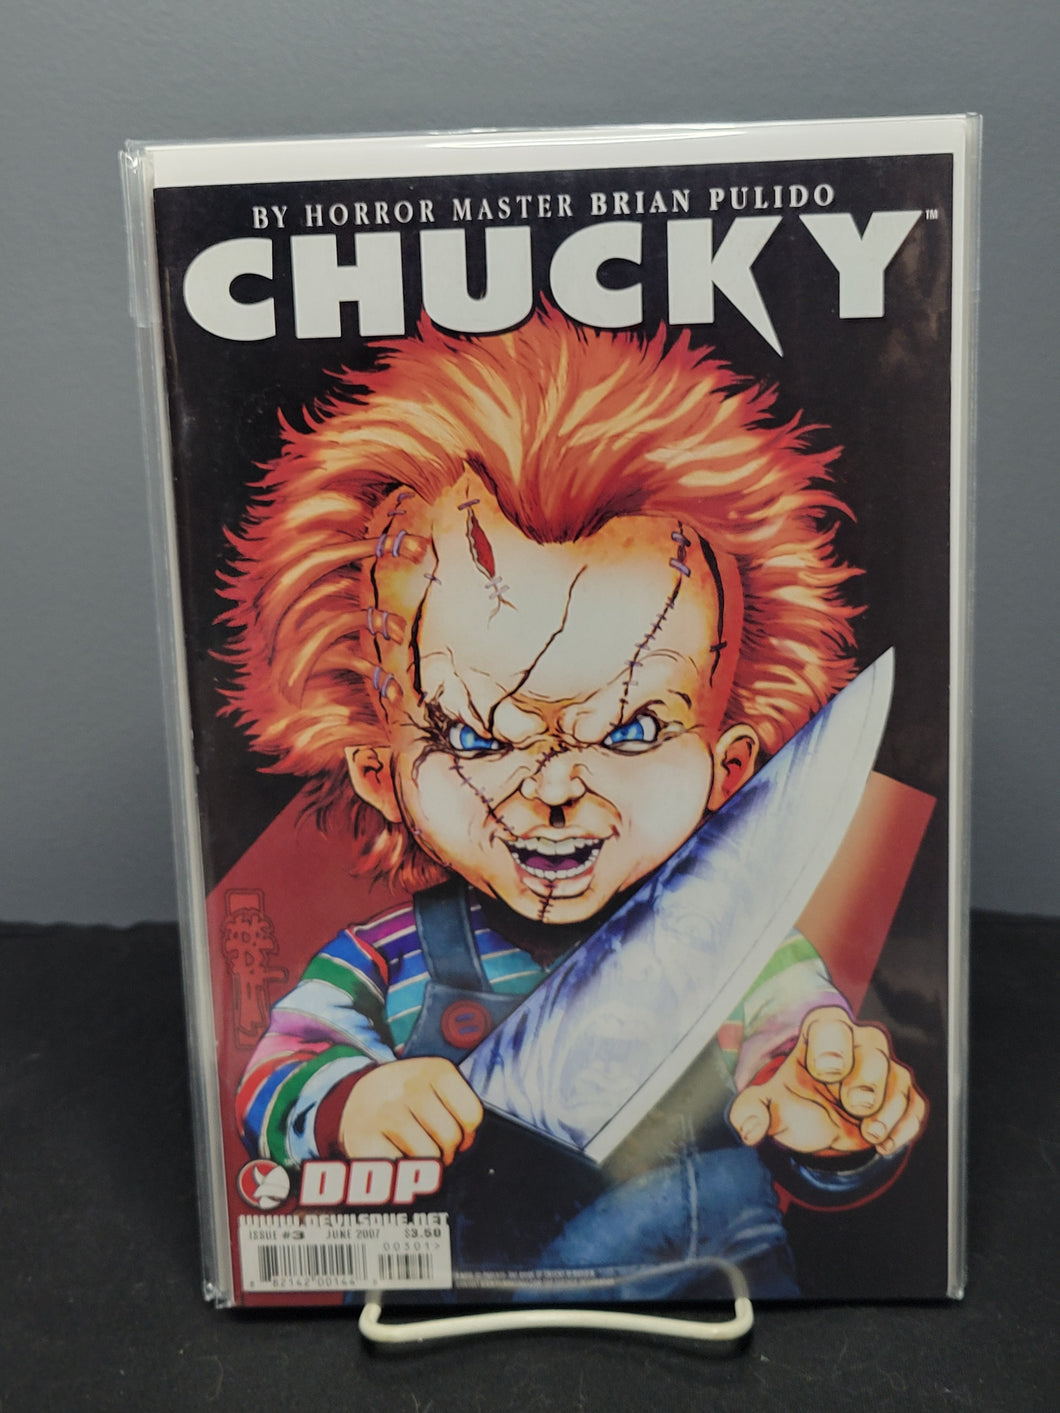 Chucky #3